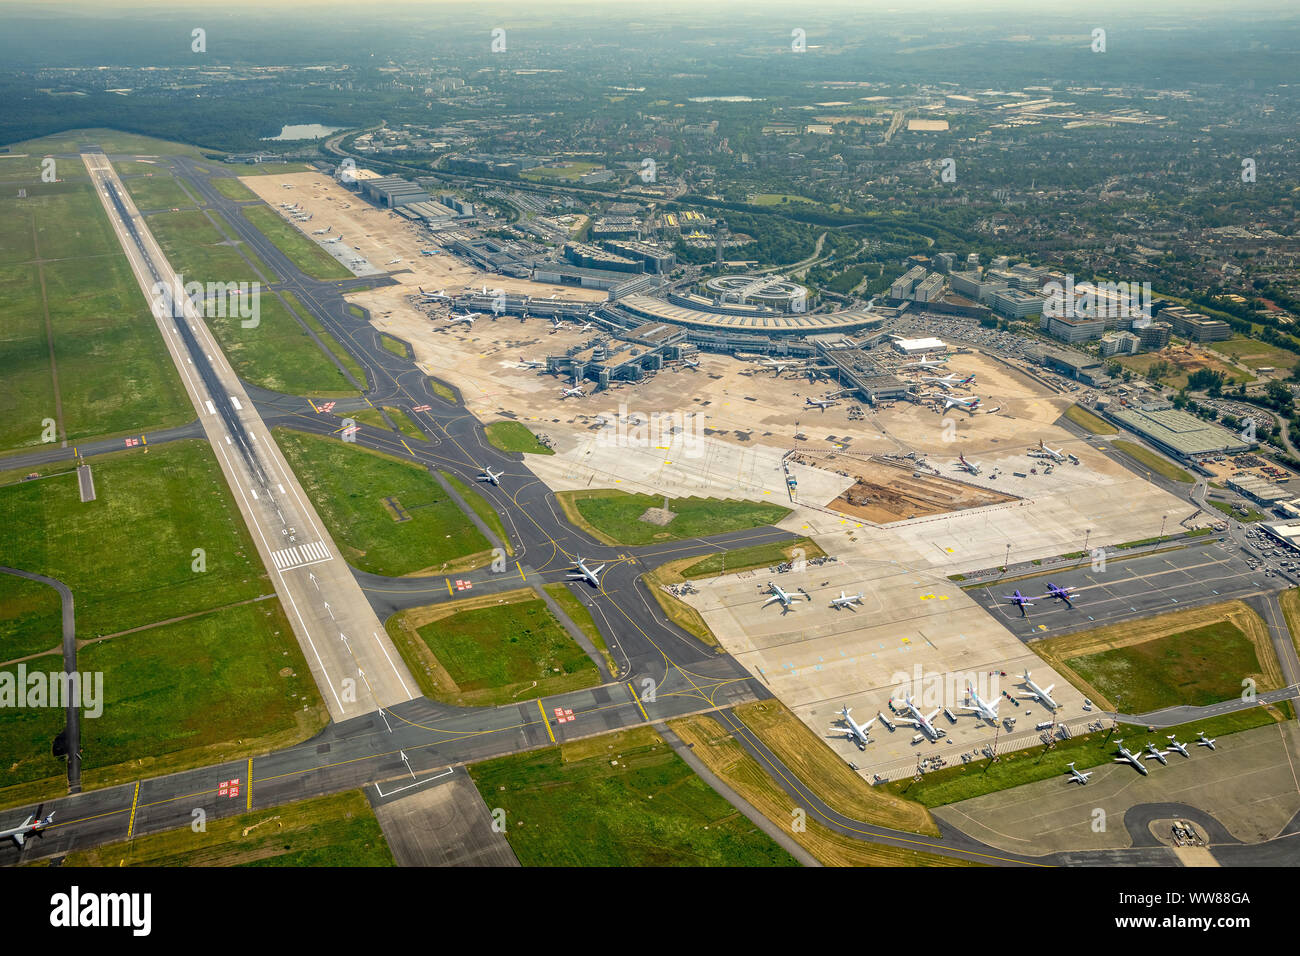 Aerial view, Dusseldorf airport with runway 05, Dusseldorf, Lower Rhine, North Rhine-Westphalia, Germany Stock Photo